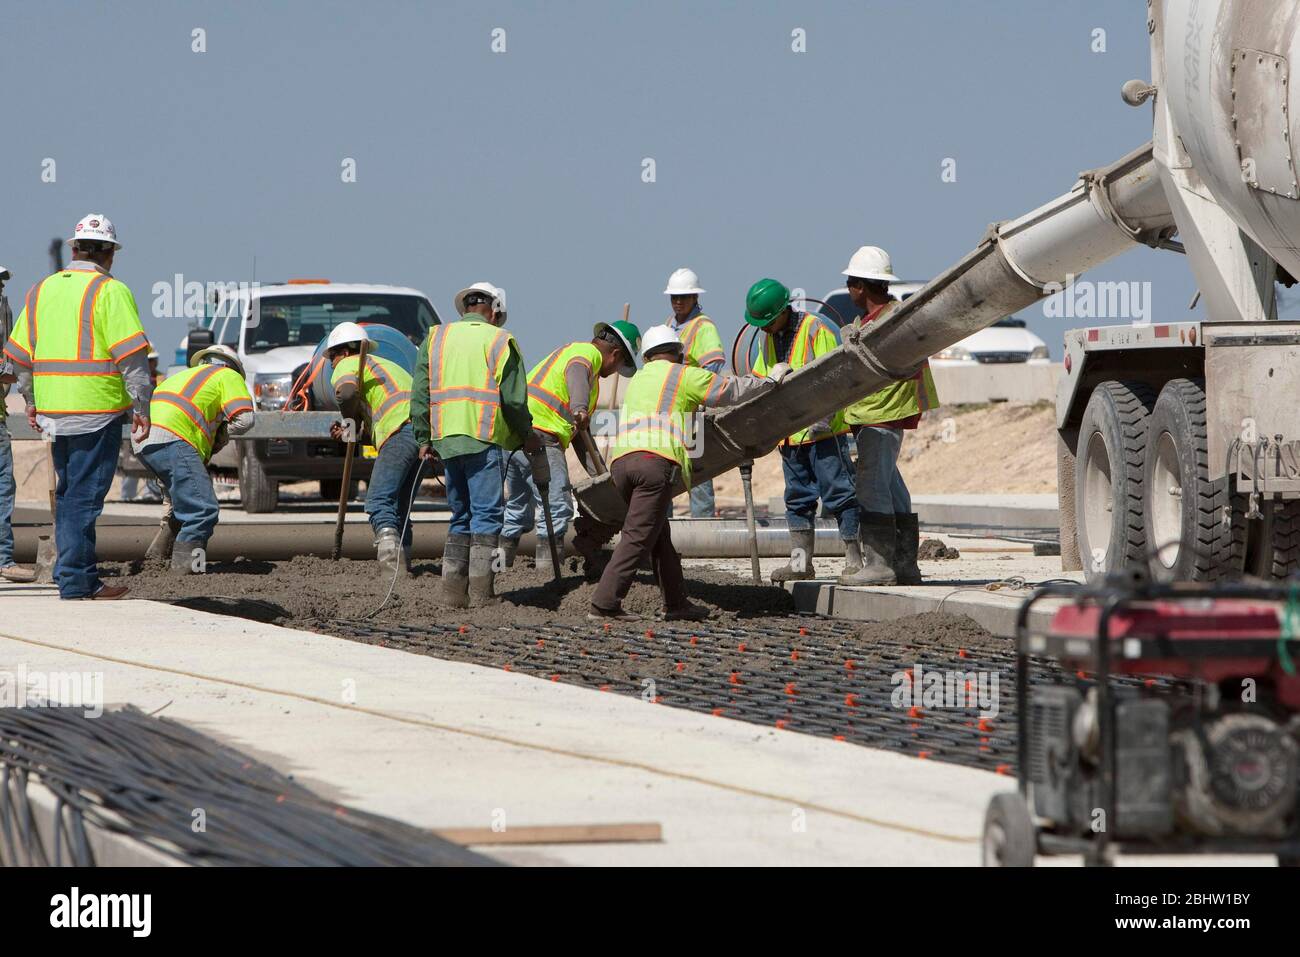 Austin Texas États-Unis, 6 avril 2011:les travailleurs versent du béton sur la chaussée pendant le projet de construction d'autoroute. ©Marjorie Kamys Cotera/Daemmrich Photographie Banque D'Images